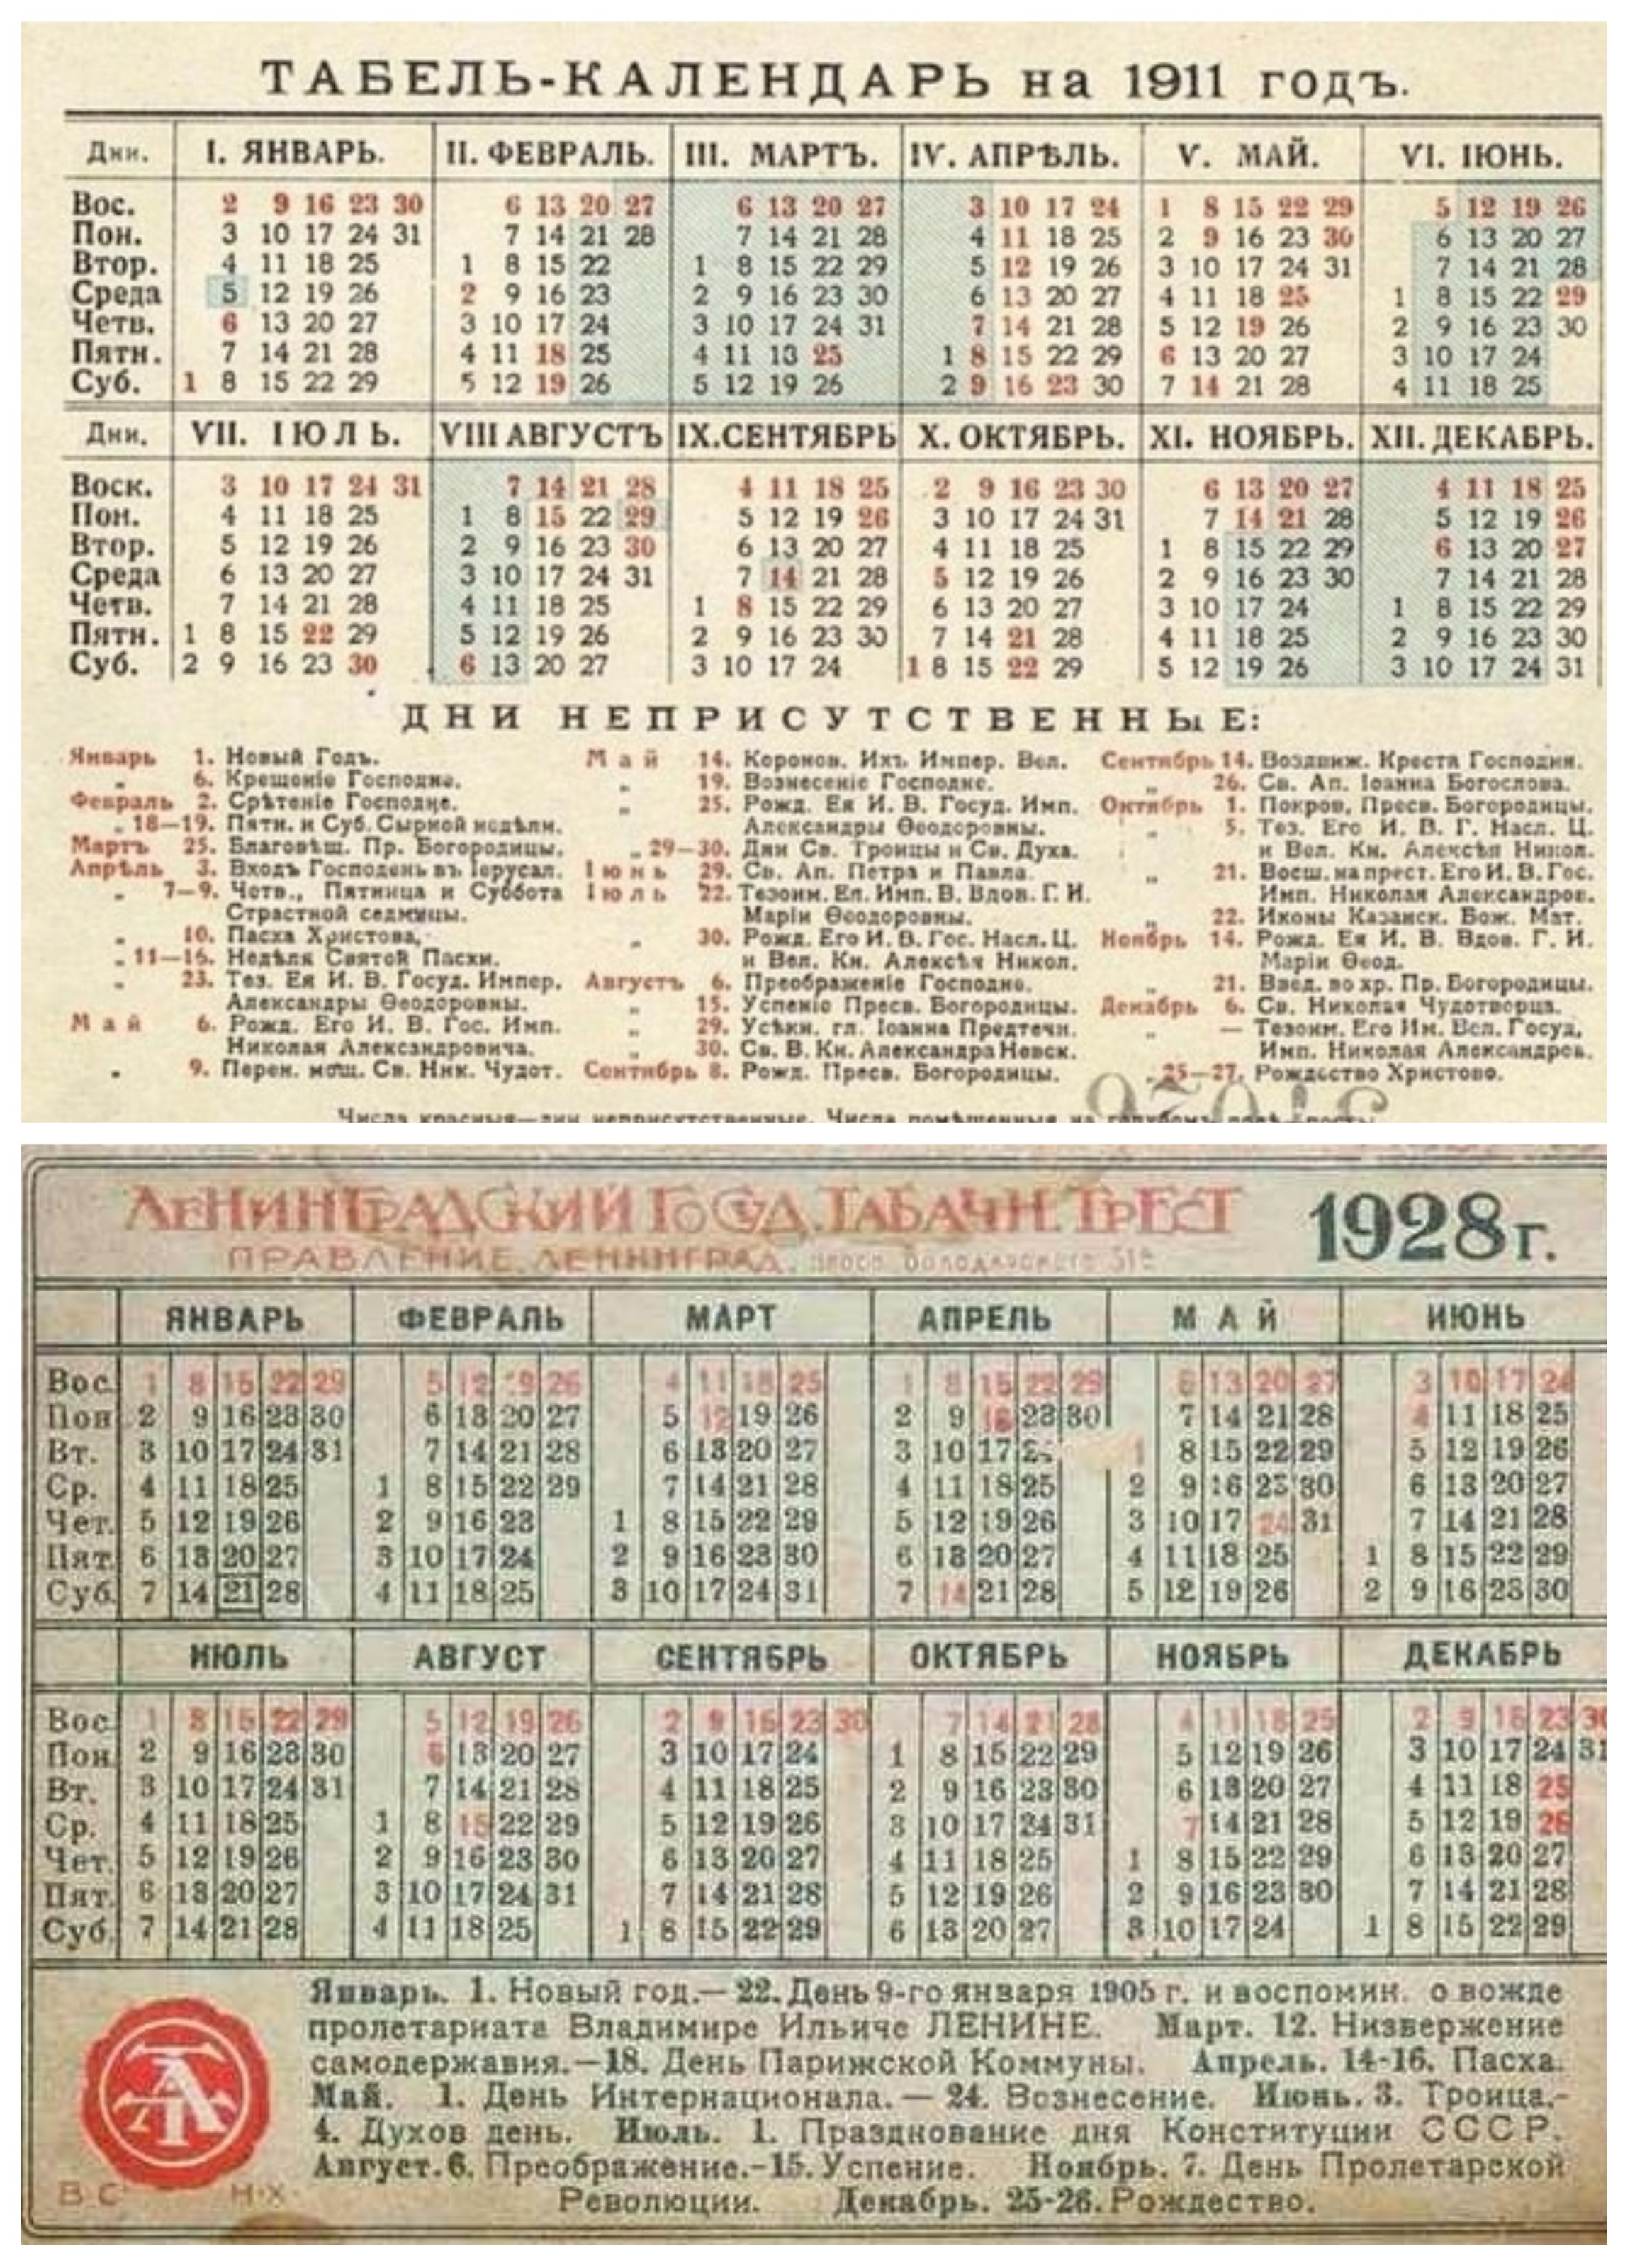 Календари 1911-го и 1928 годов. На обоих выходным днем отмечено 25 декабря. Фото: istpravda.com.ua